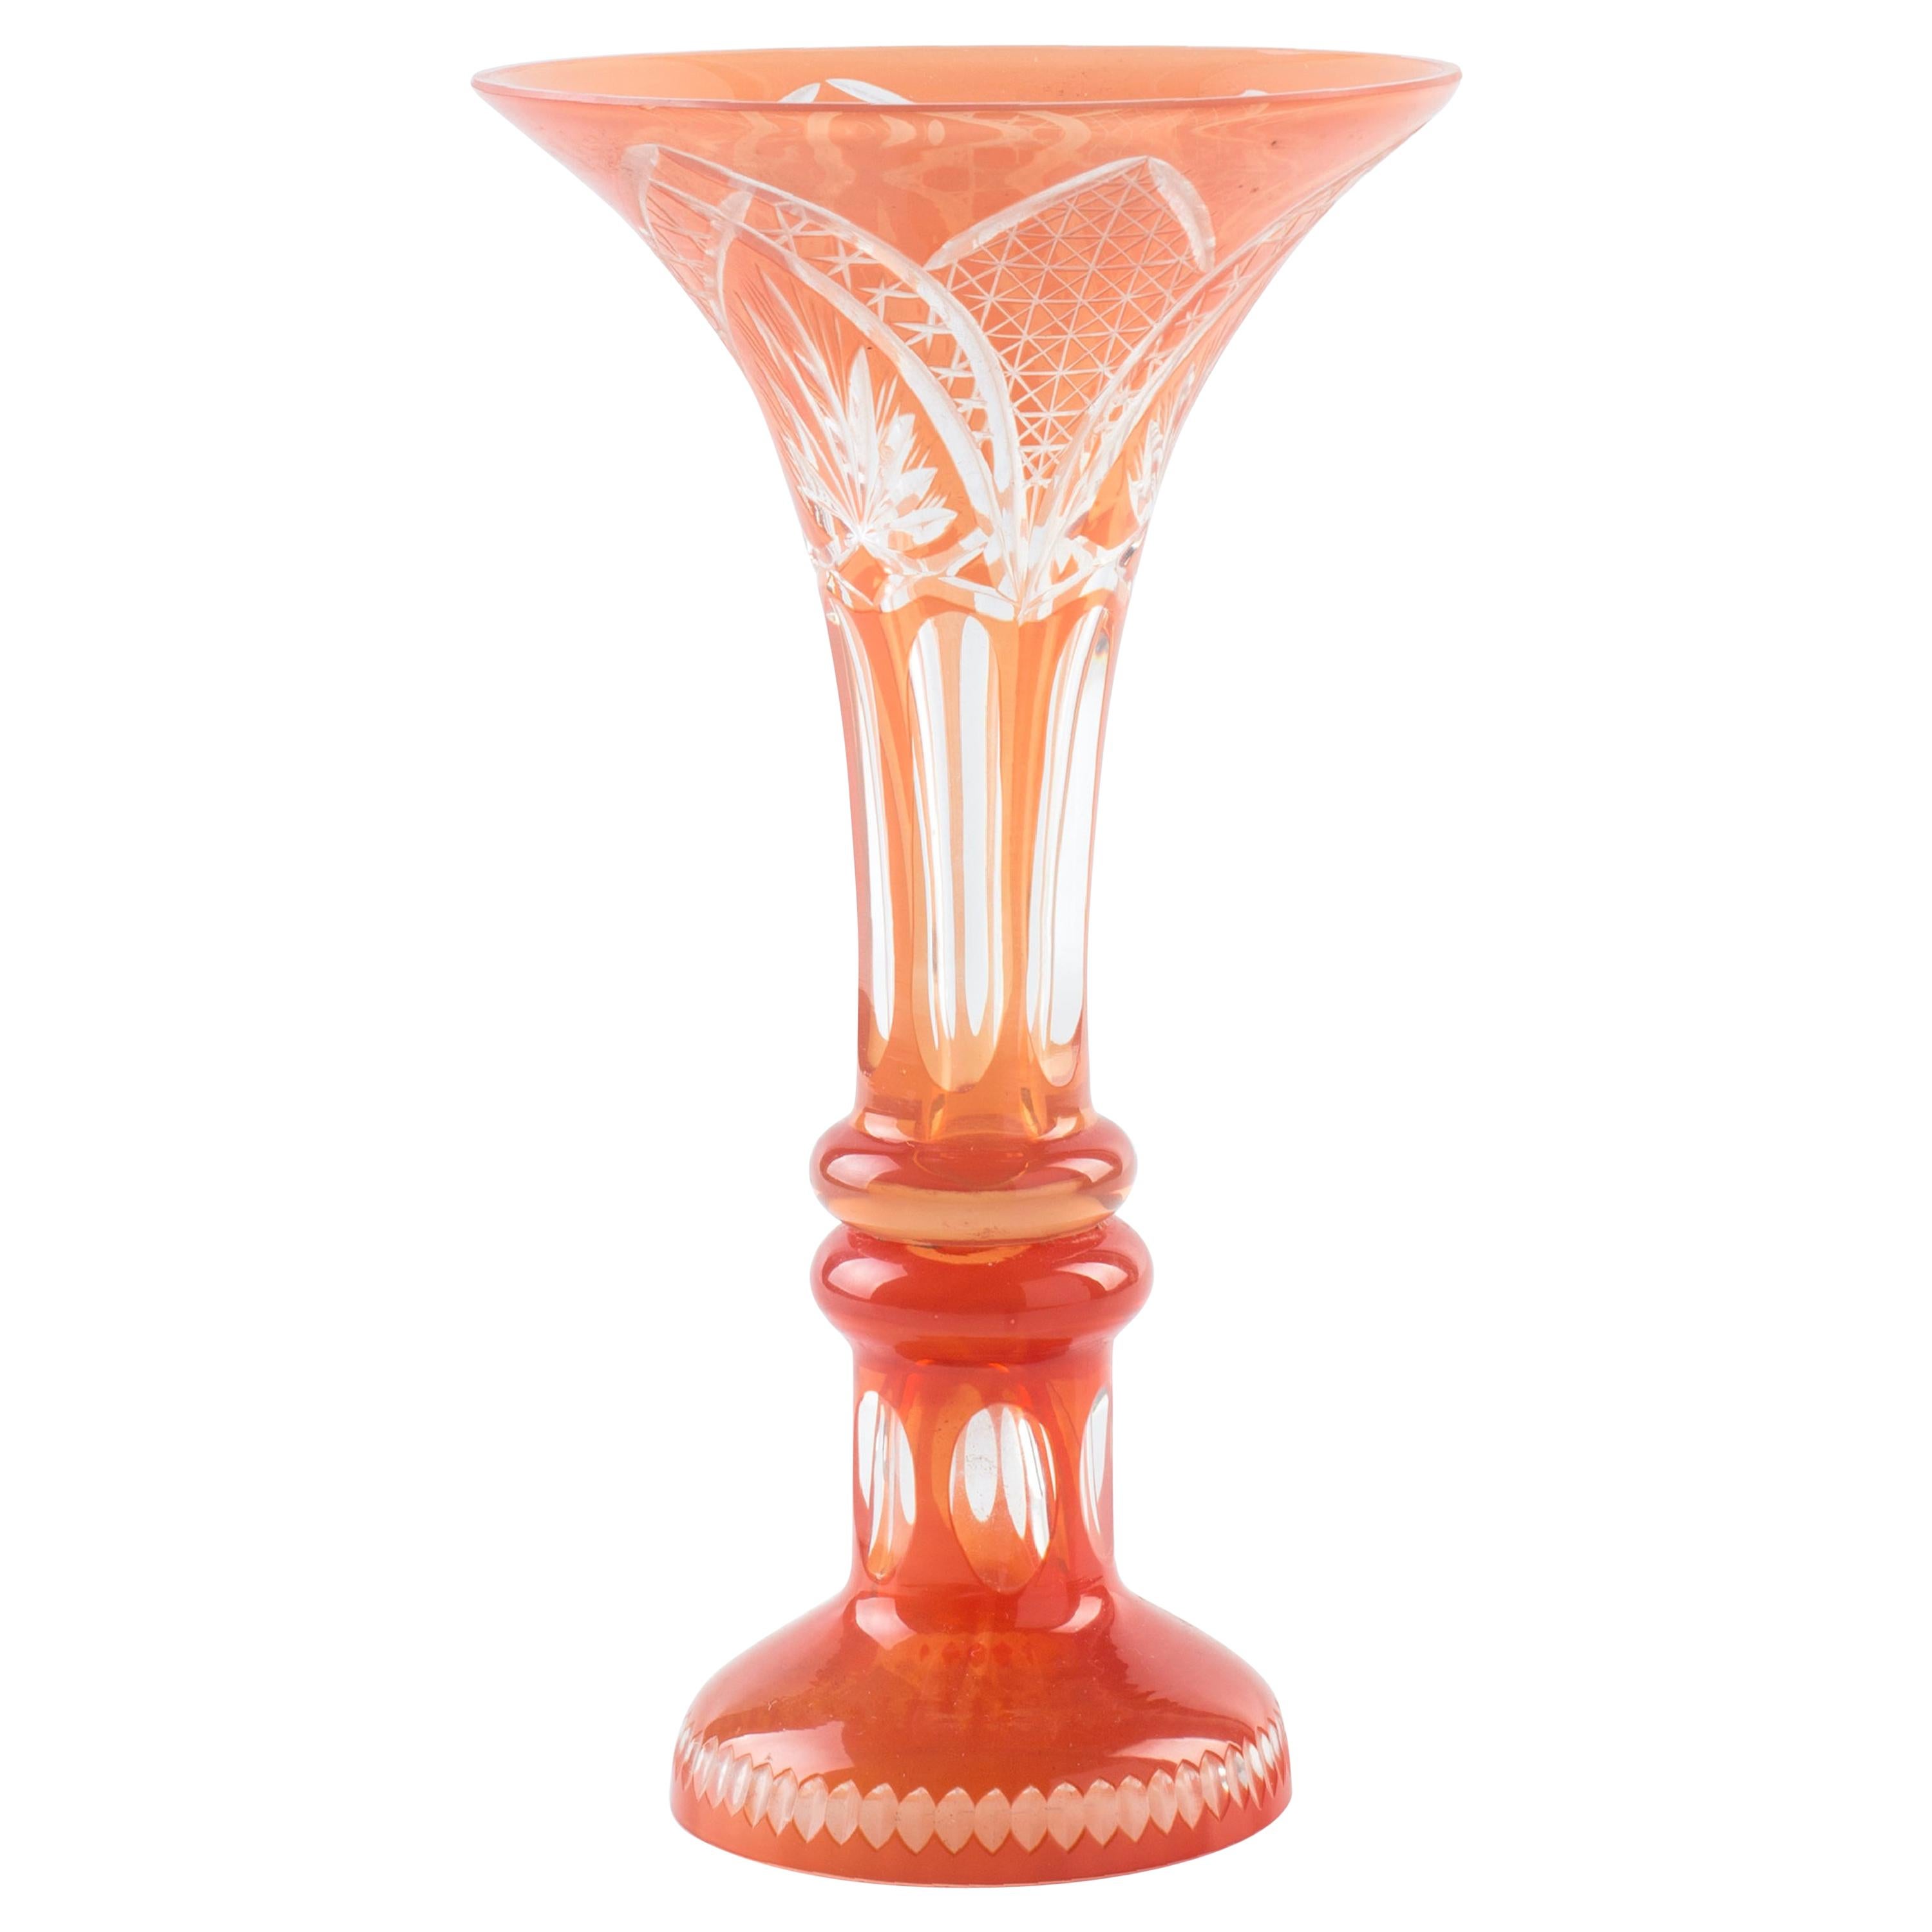 Vintage Glass Vase - Europe Mid-20th Century